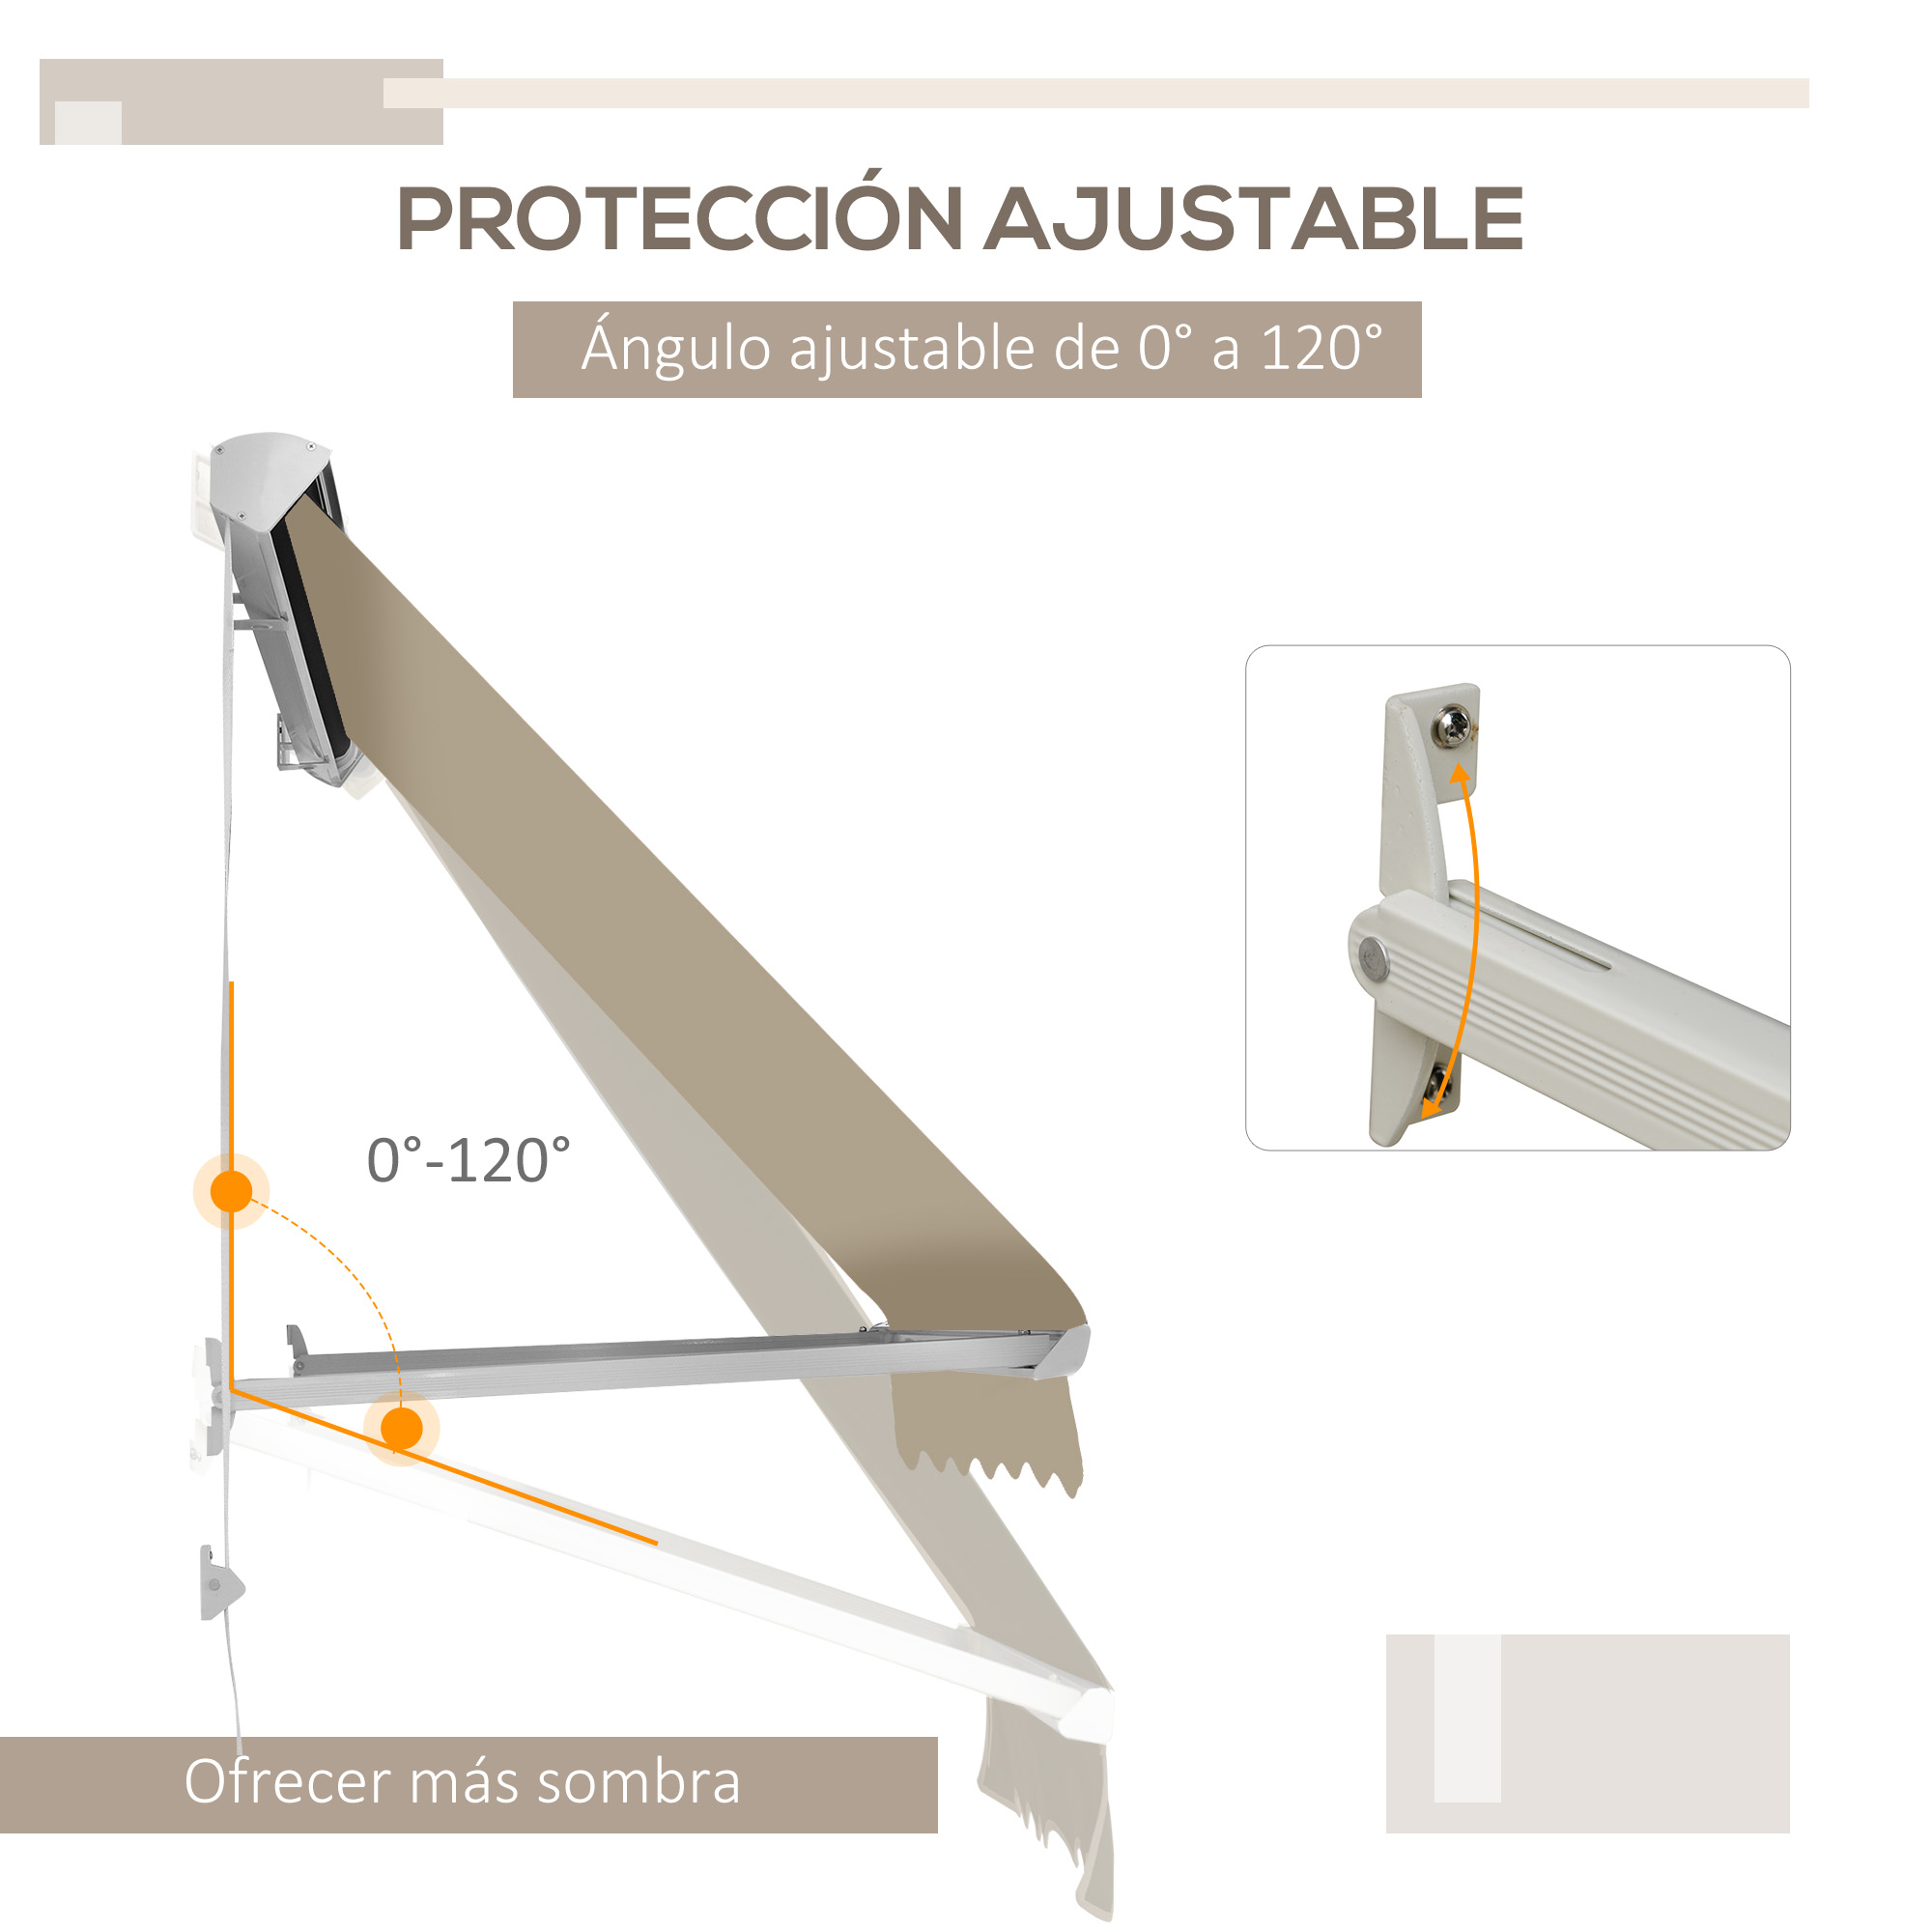 Outsunny Toldo Retráctil de Exterior con Marco de Aluminio Ángulo Ajustable  Protección UV e Impermeable 180x70 cm Beige